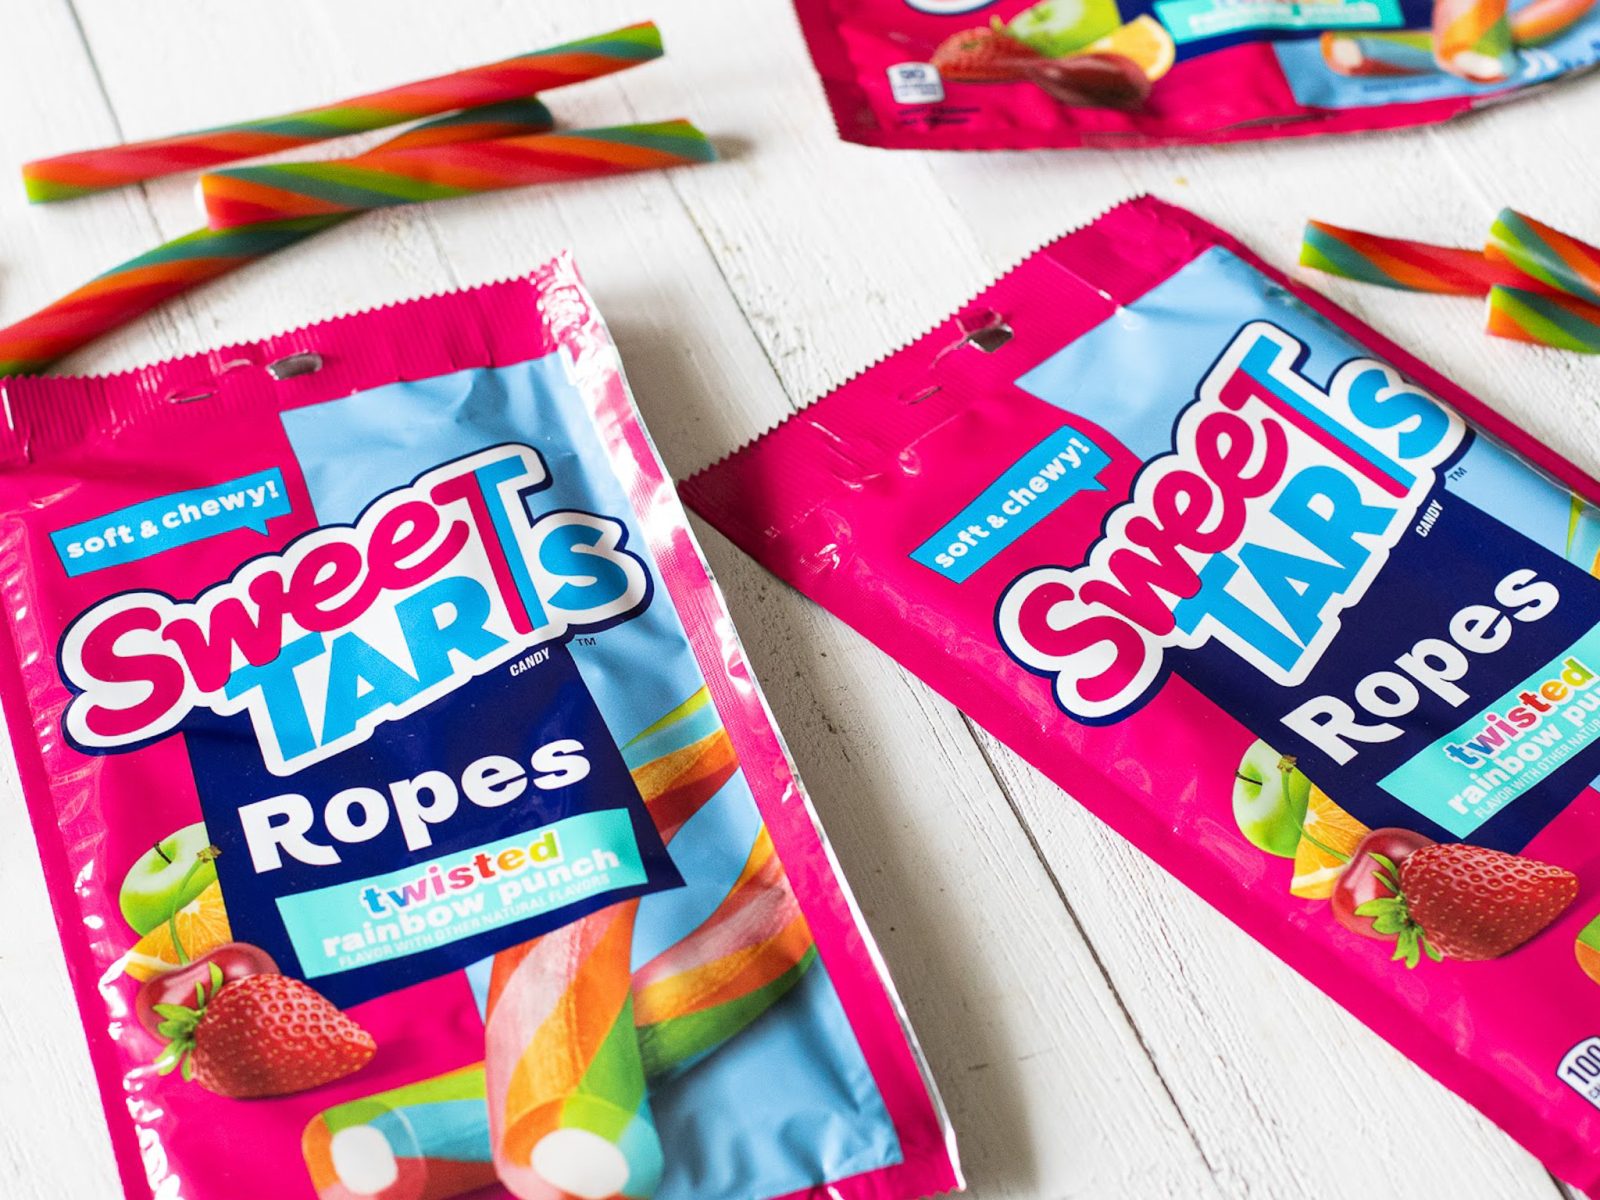 Sweetarts Ropes Candy Just $2.49 Per Bag At Kroger